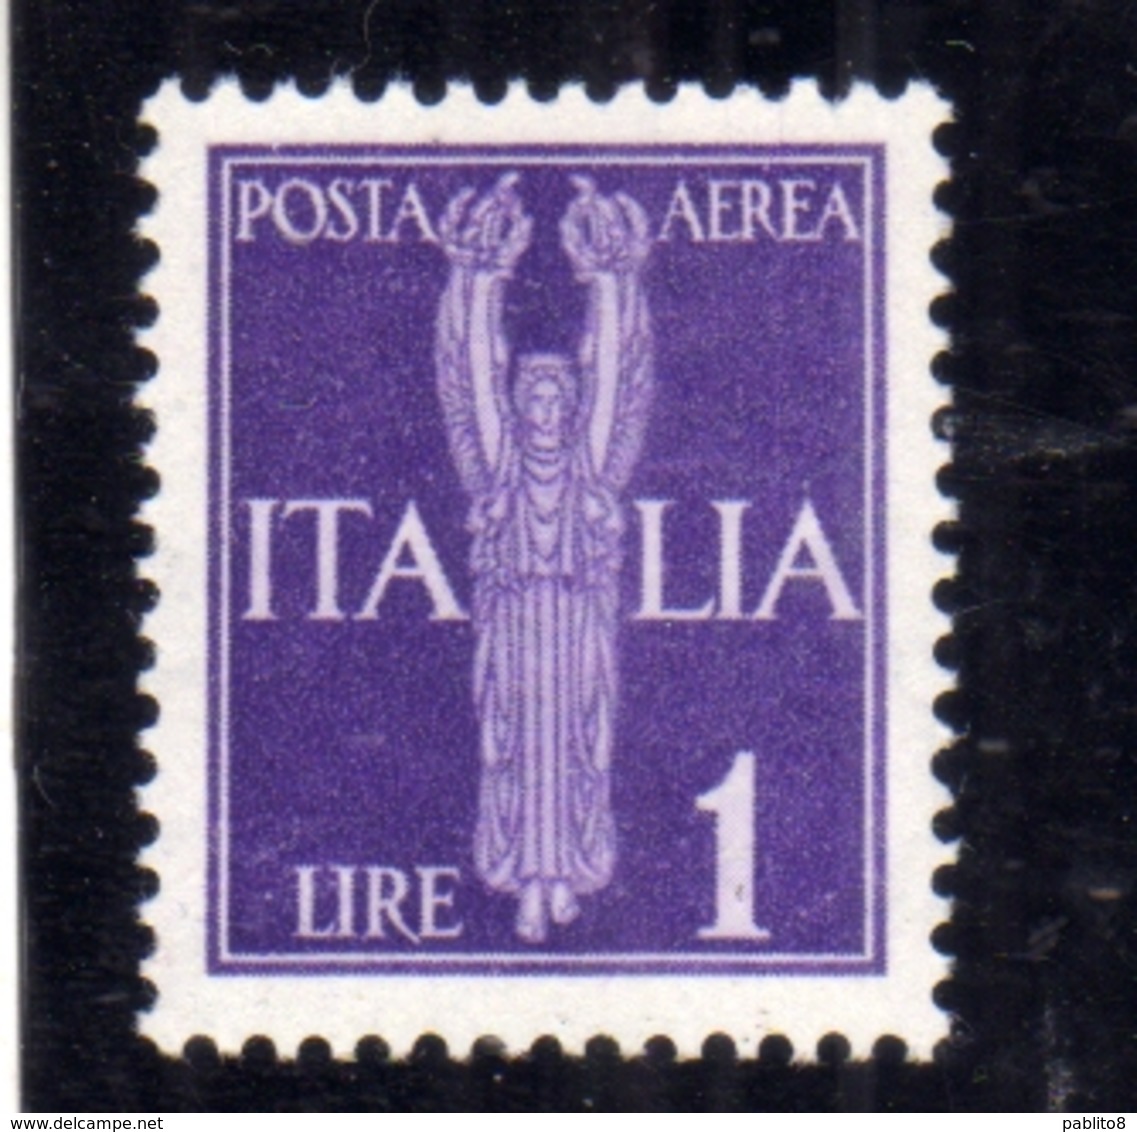 ITALIA REGNO ITALY KINGDOM 1944 REPUBBLICA SOCIALE ITALIANA RSI GNR POSTA AEREA AIR MAIL LIRE 1 MNH OTTIMA CENTRATURA - Poste Aérienne